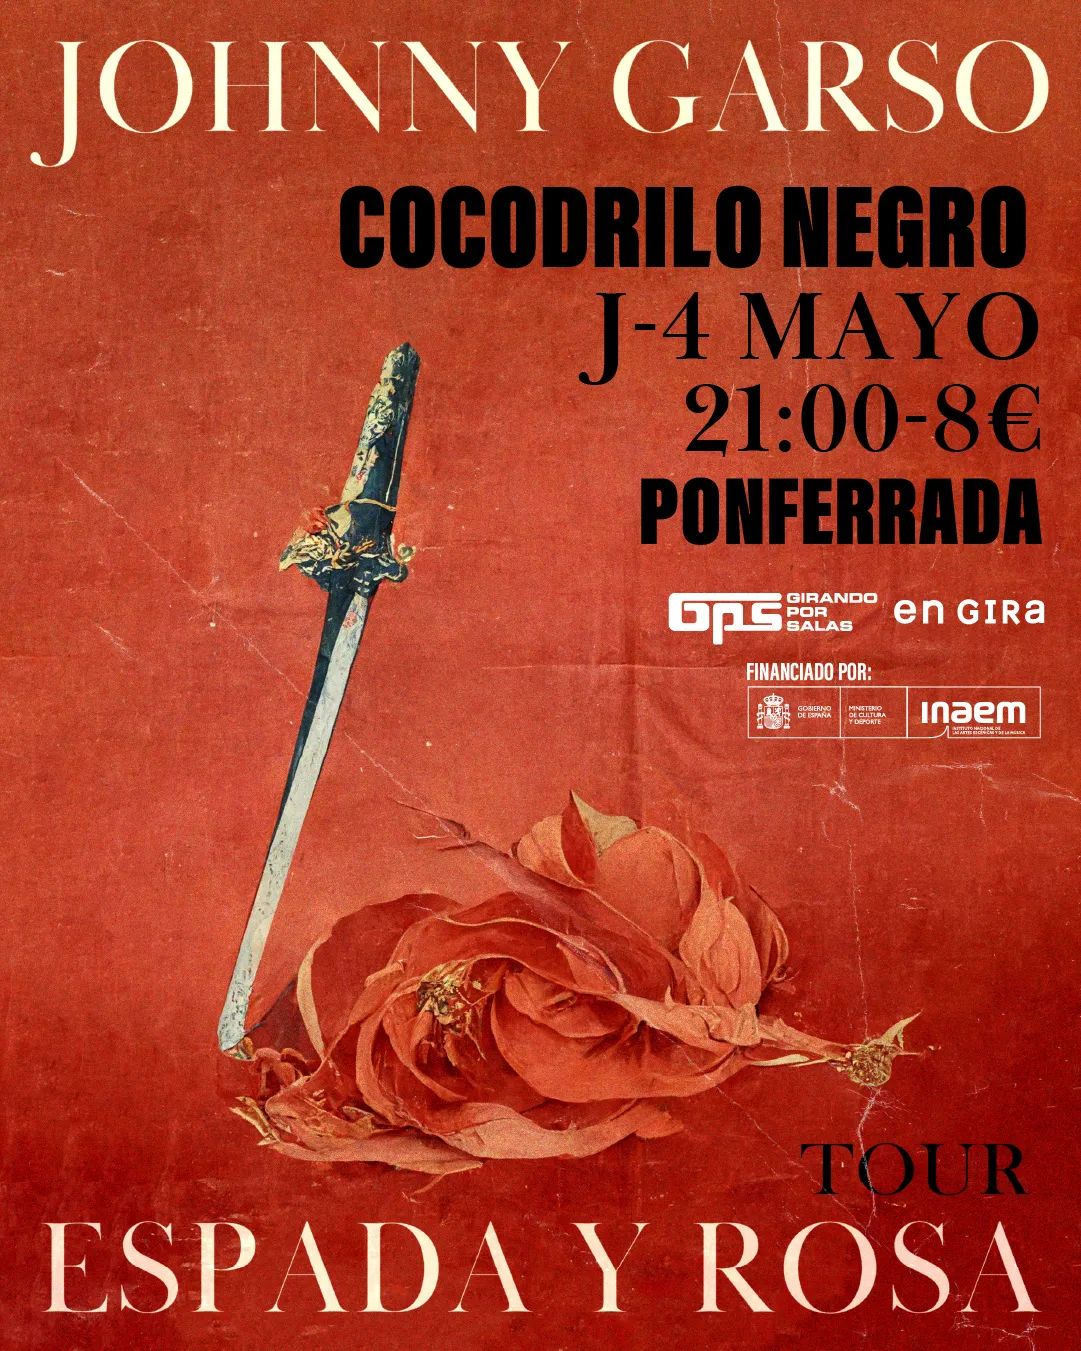 El artista Johnny Garso llega el jueves a Ponferrada con su primer disco en español, “Espada y Rosa hasta que muera” 2